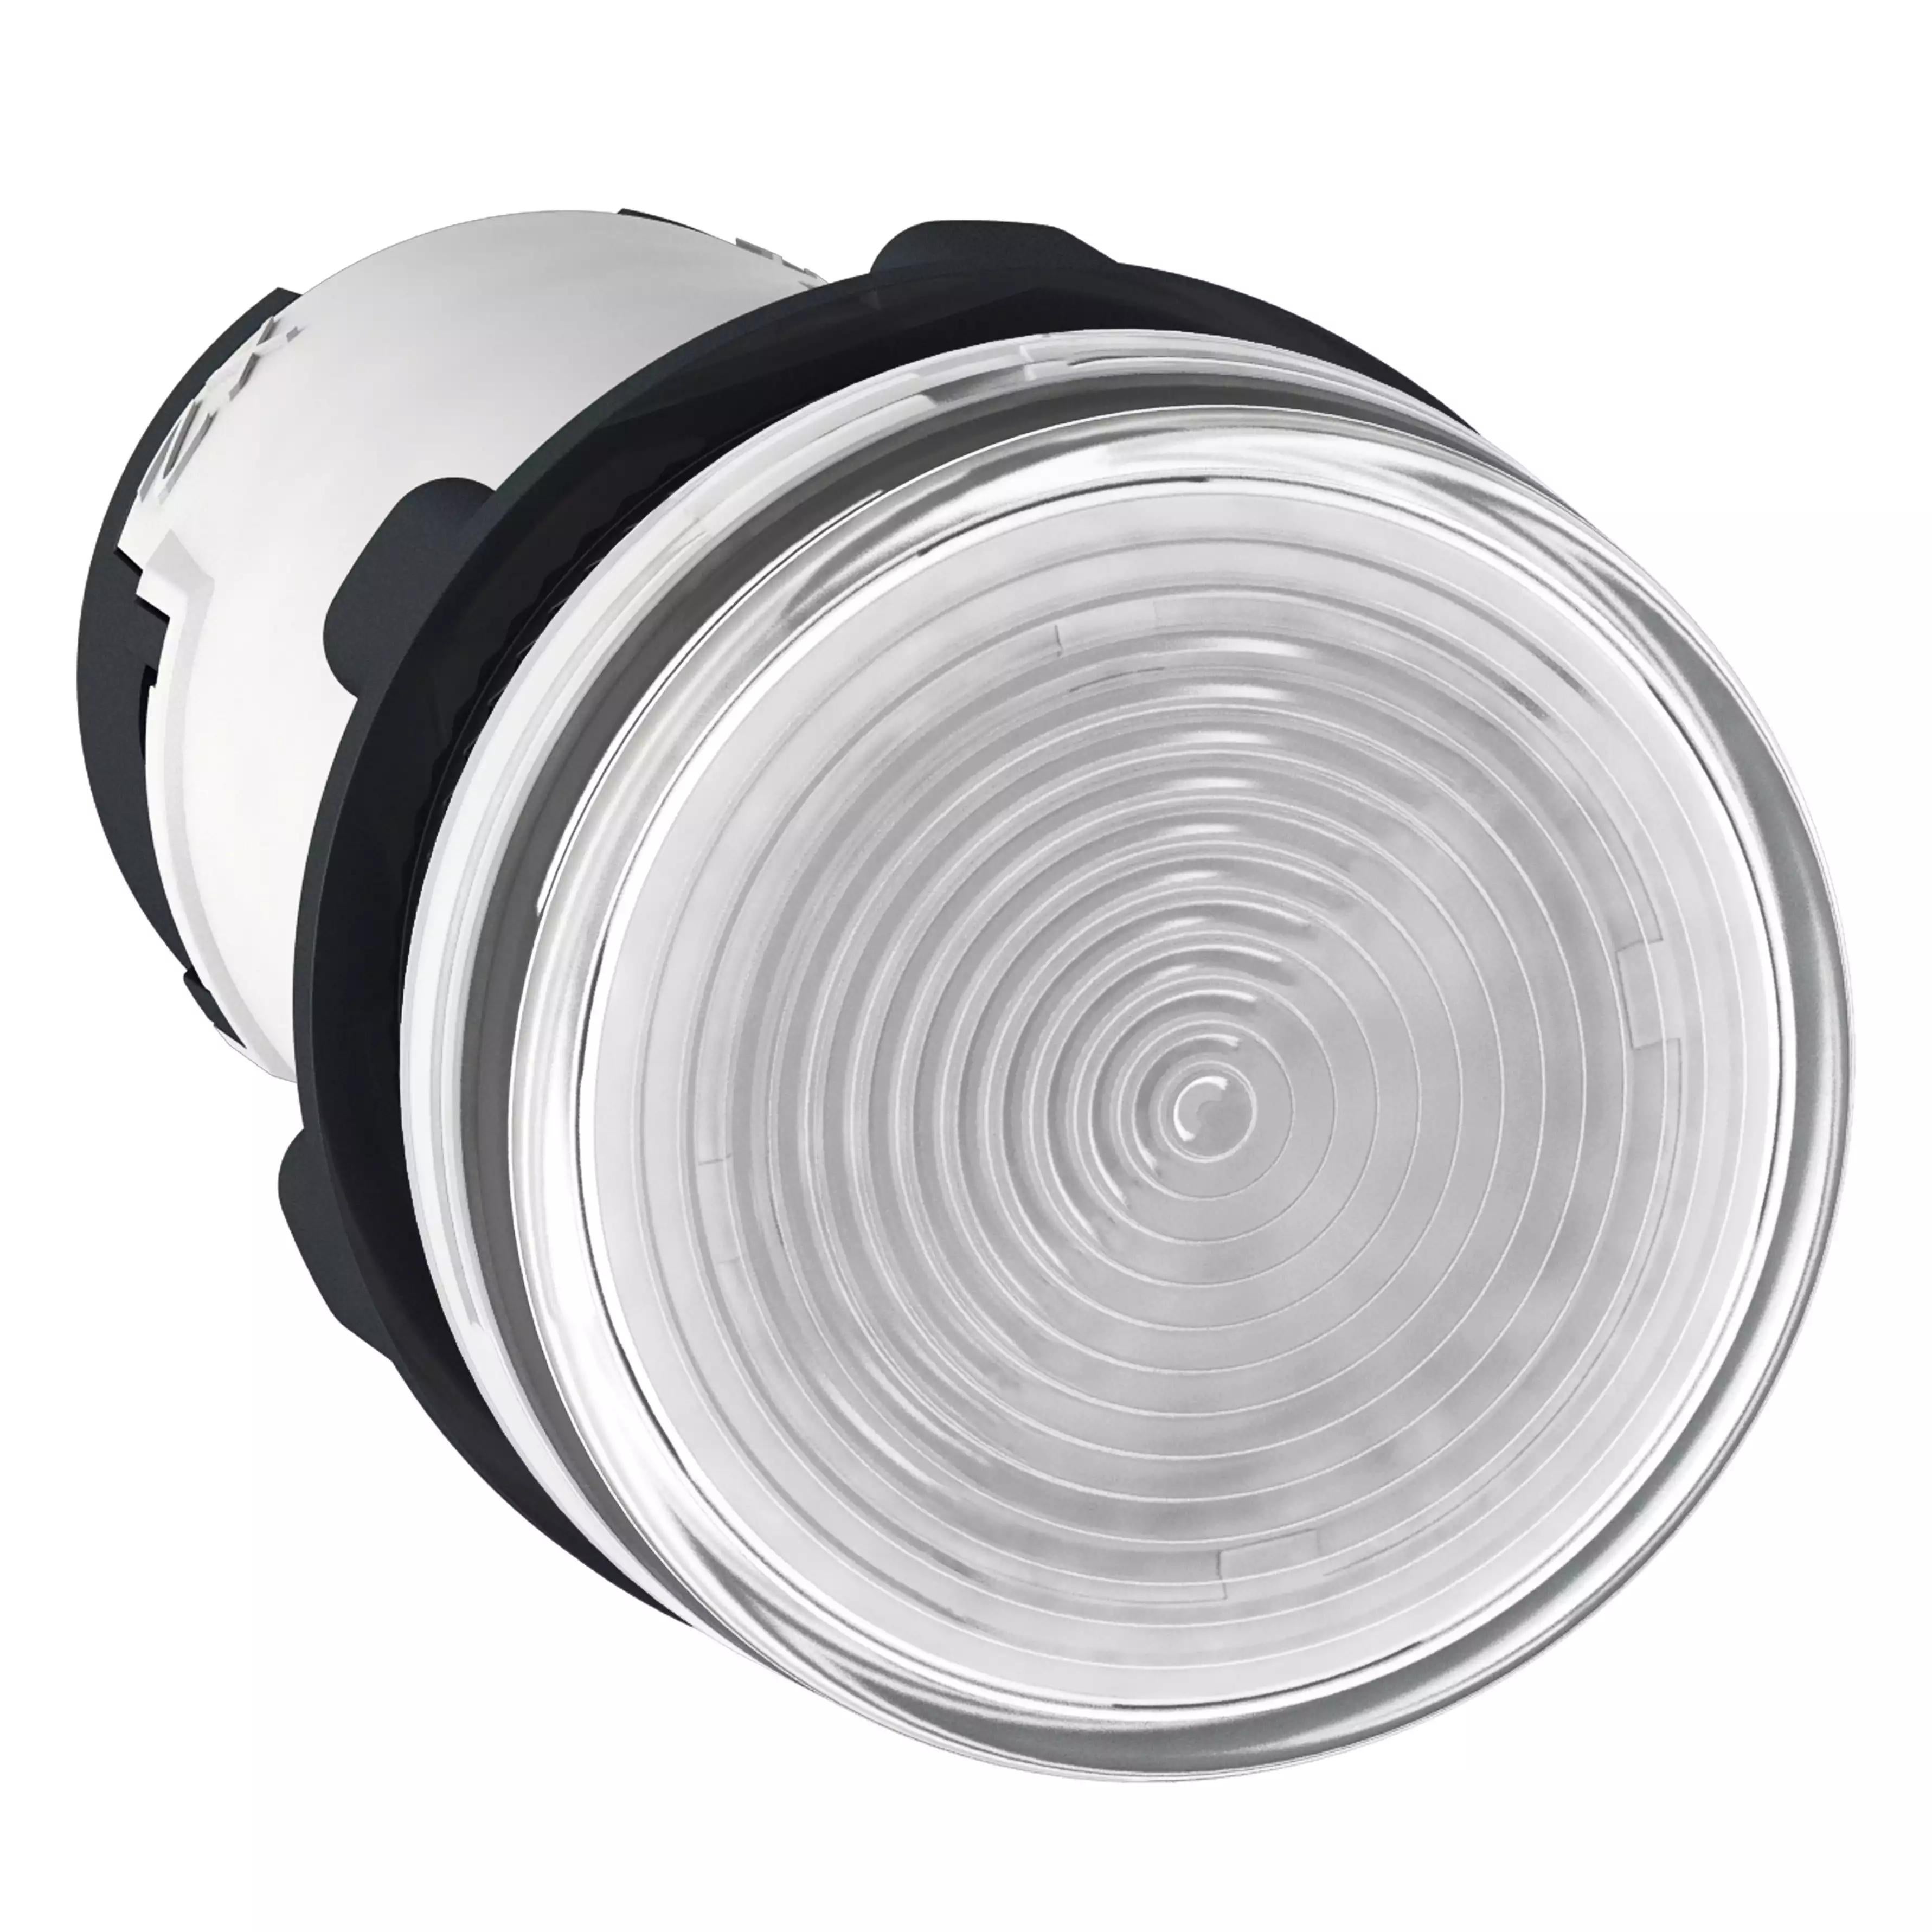 Monolithic pilot light, Harmony XB7, plastic, clear, 22mm, plain lens for BA9s bulb, lt 250V